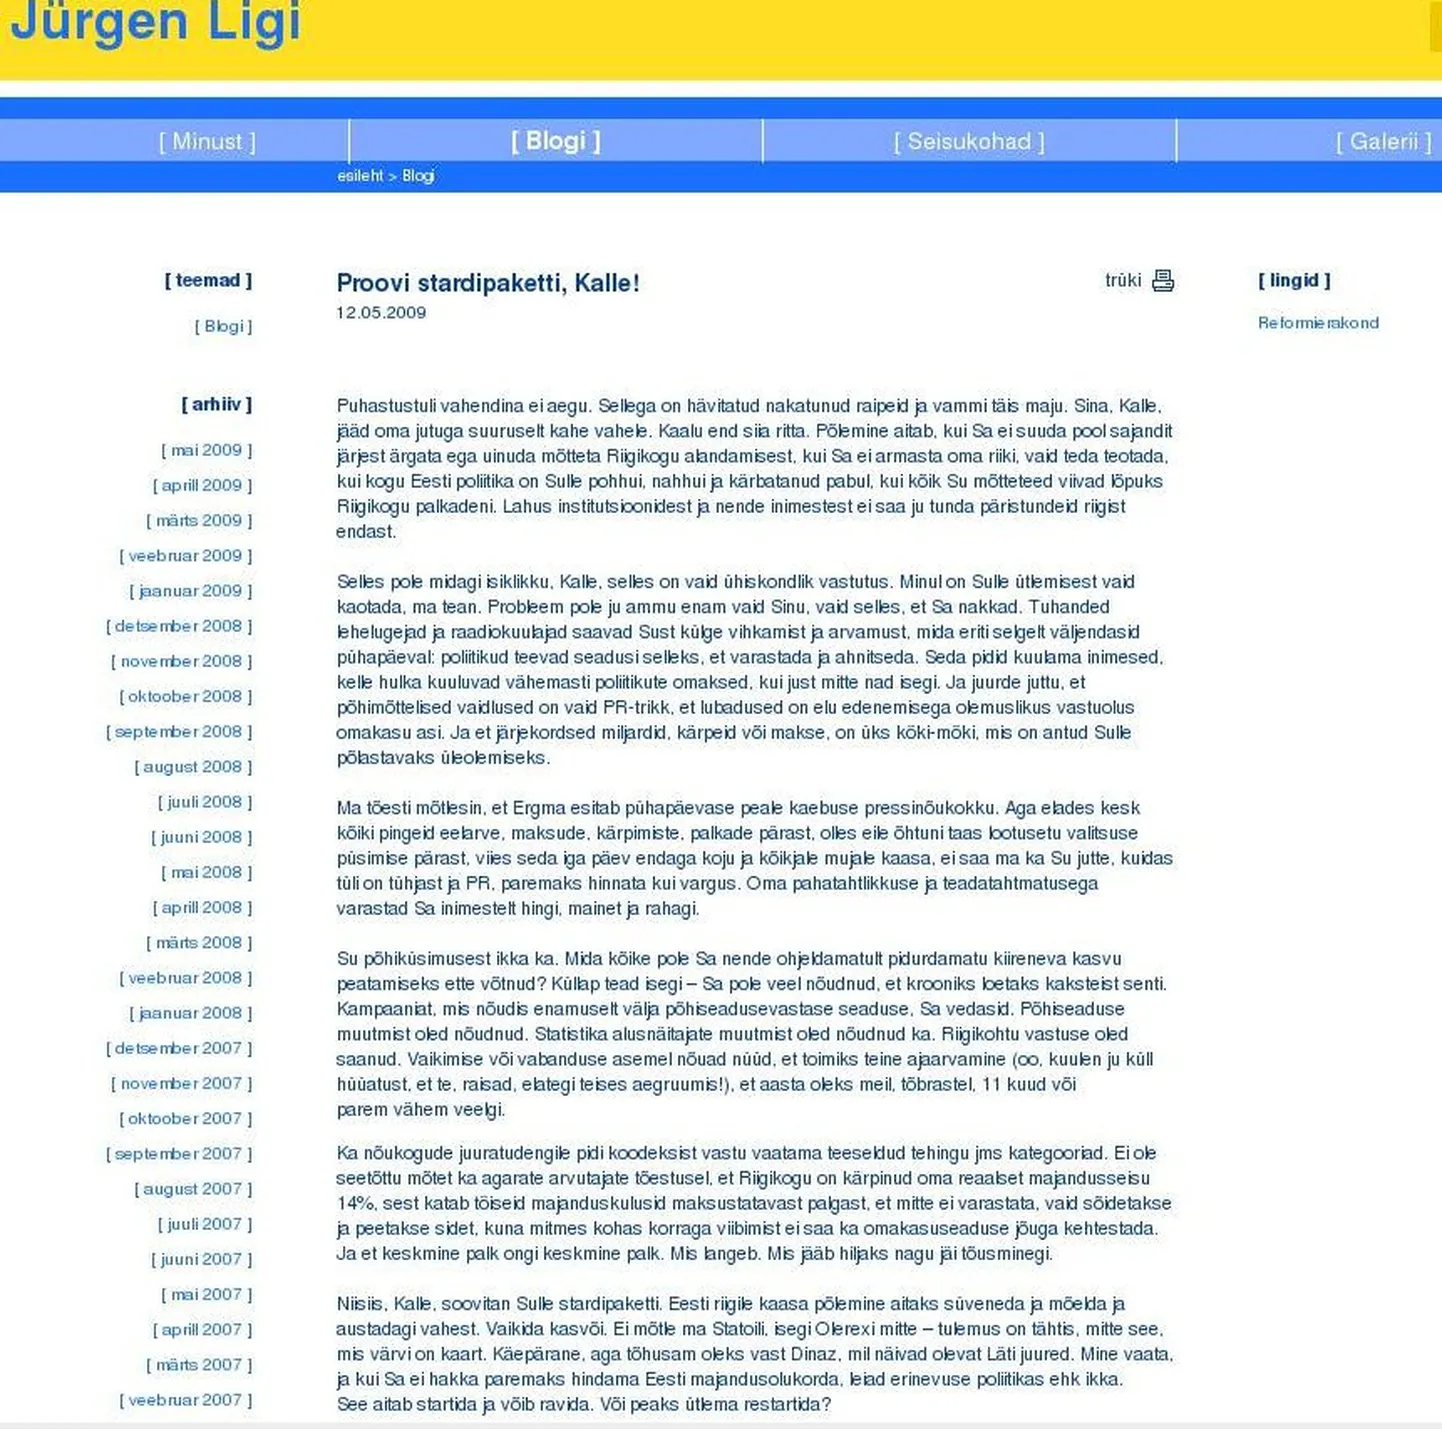 Скриншот скандальной записи Юргена Лиги.